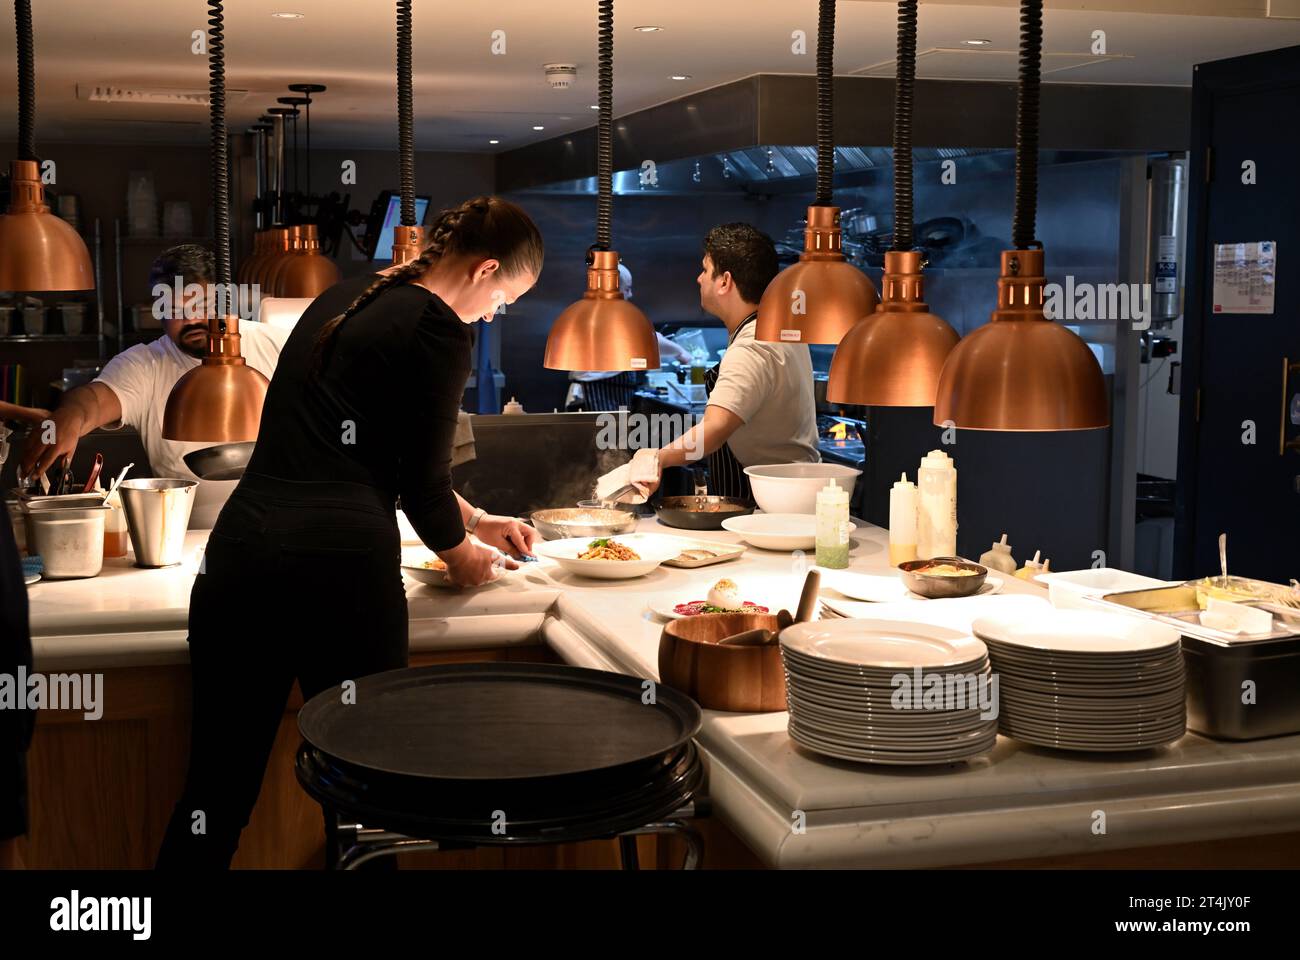 Restaurant chefs zone de service avec serveuse collecté de la nourriture qui est prête, Gusto italien, Oxford, Royaume-Uni Banque D'Images